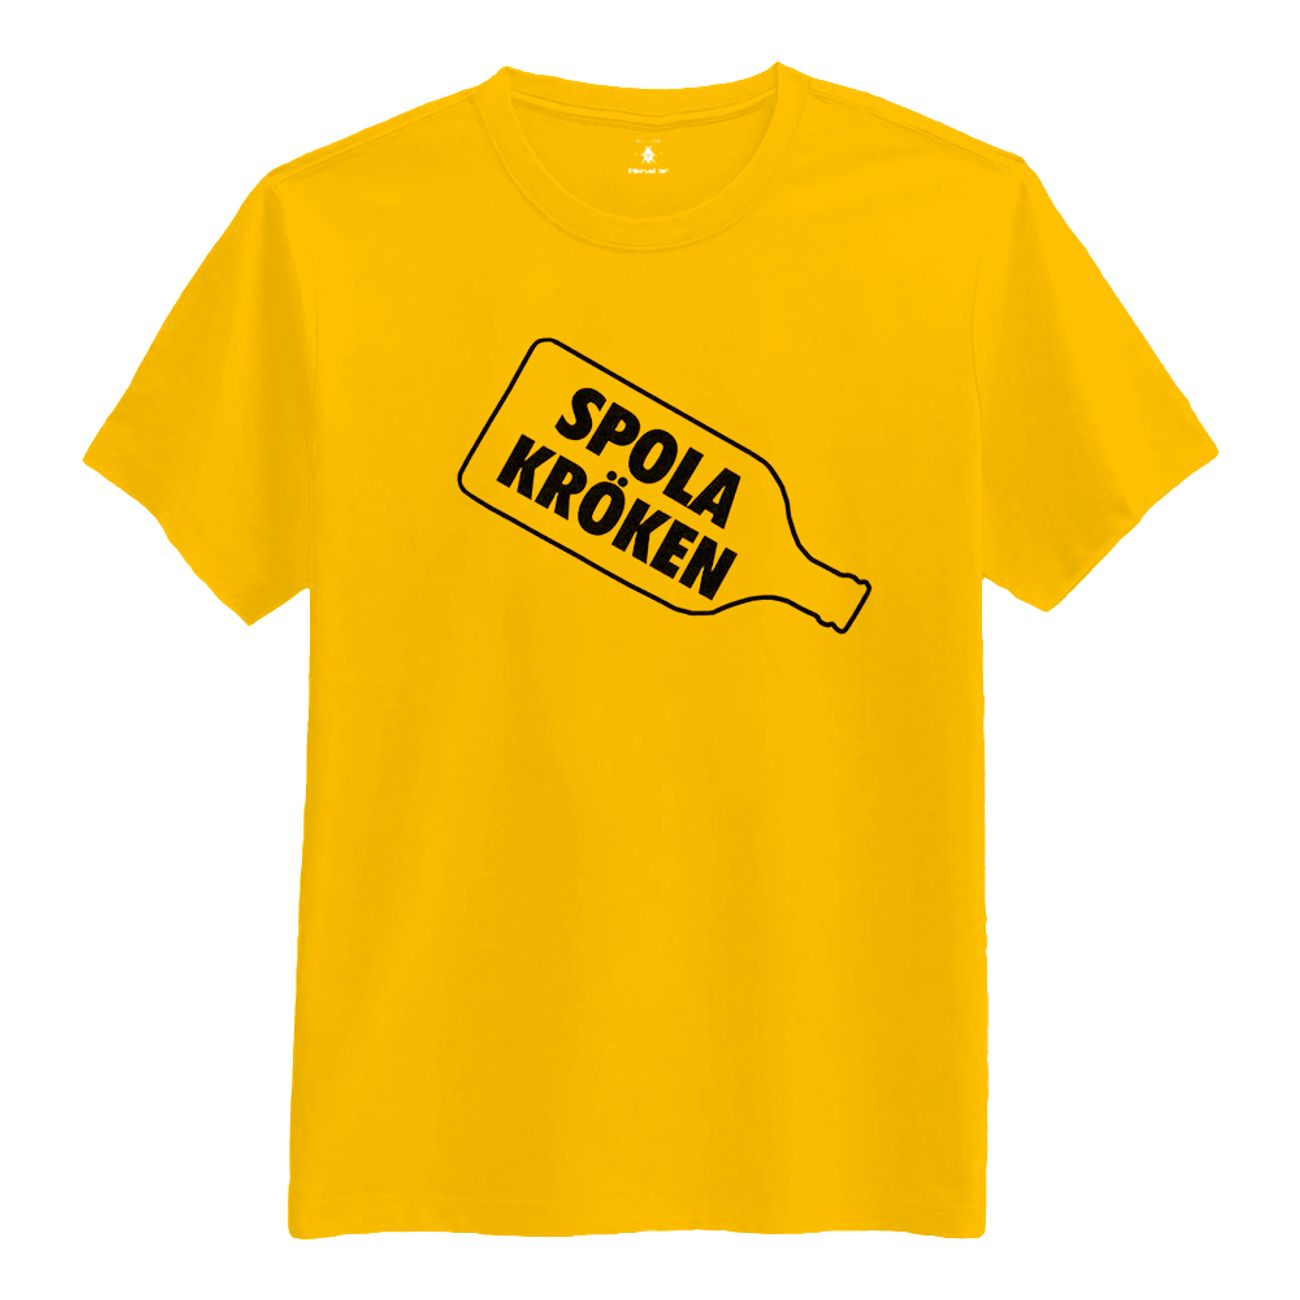 spola-kroken-t-shirt-85926-2